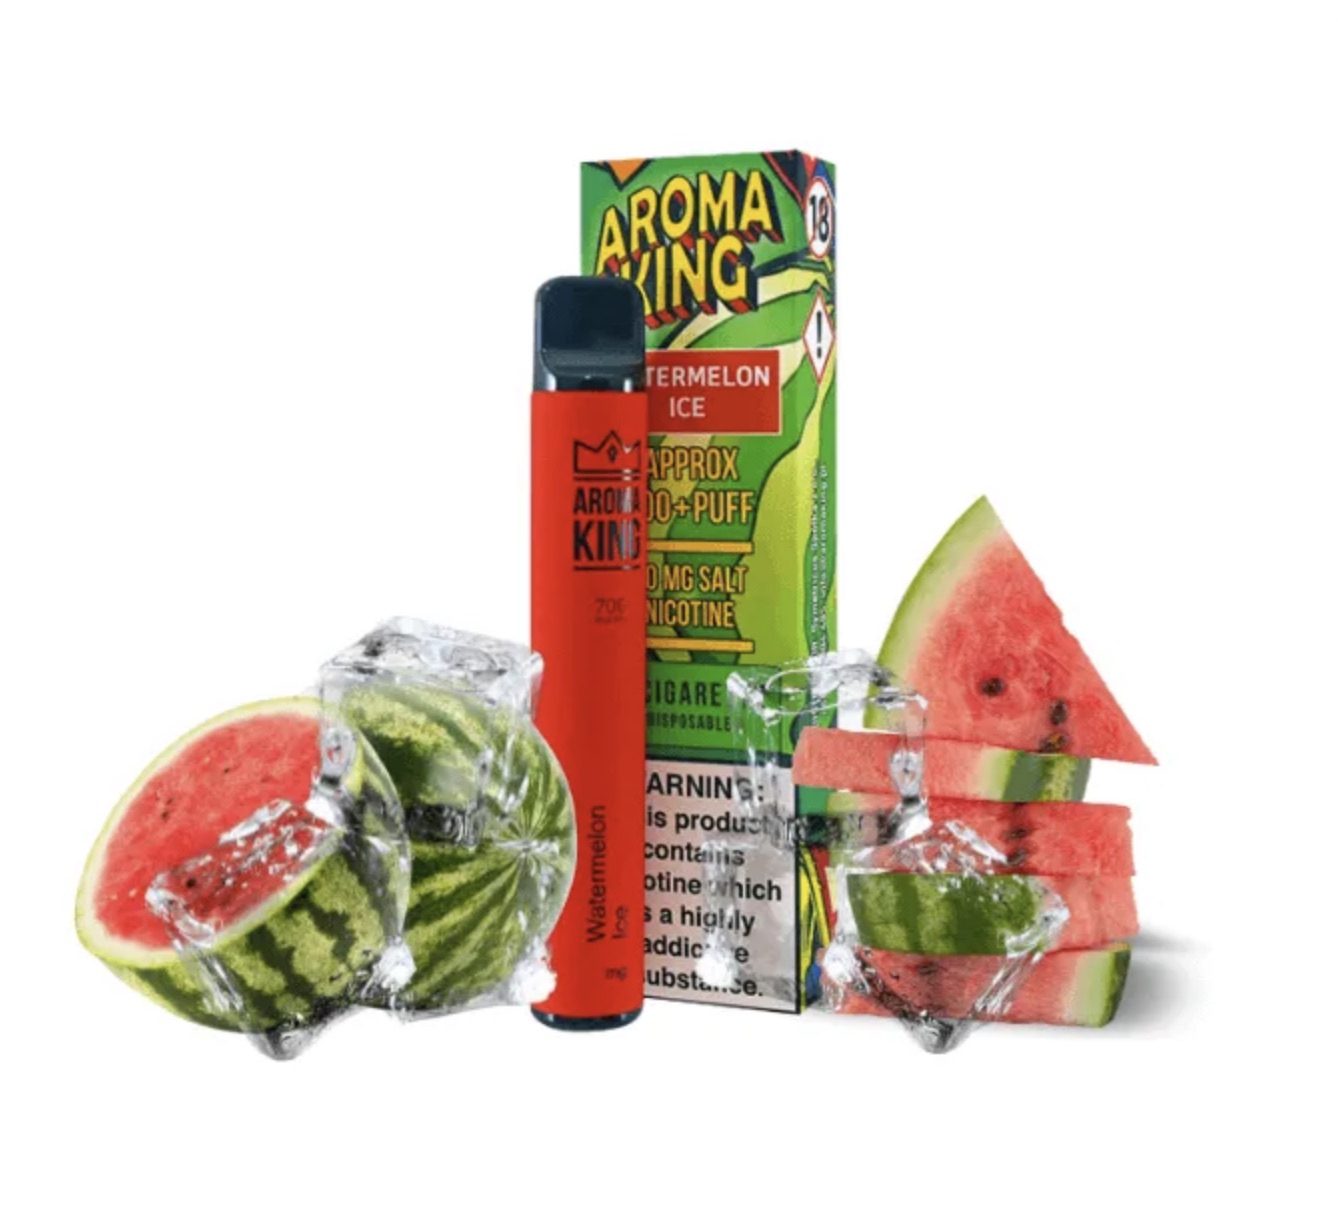 Pod Watermelon Ice Aroma King E Garette 2022 03 18 19 51 50